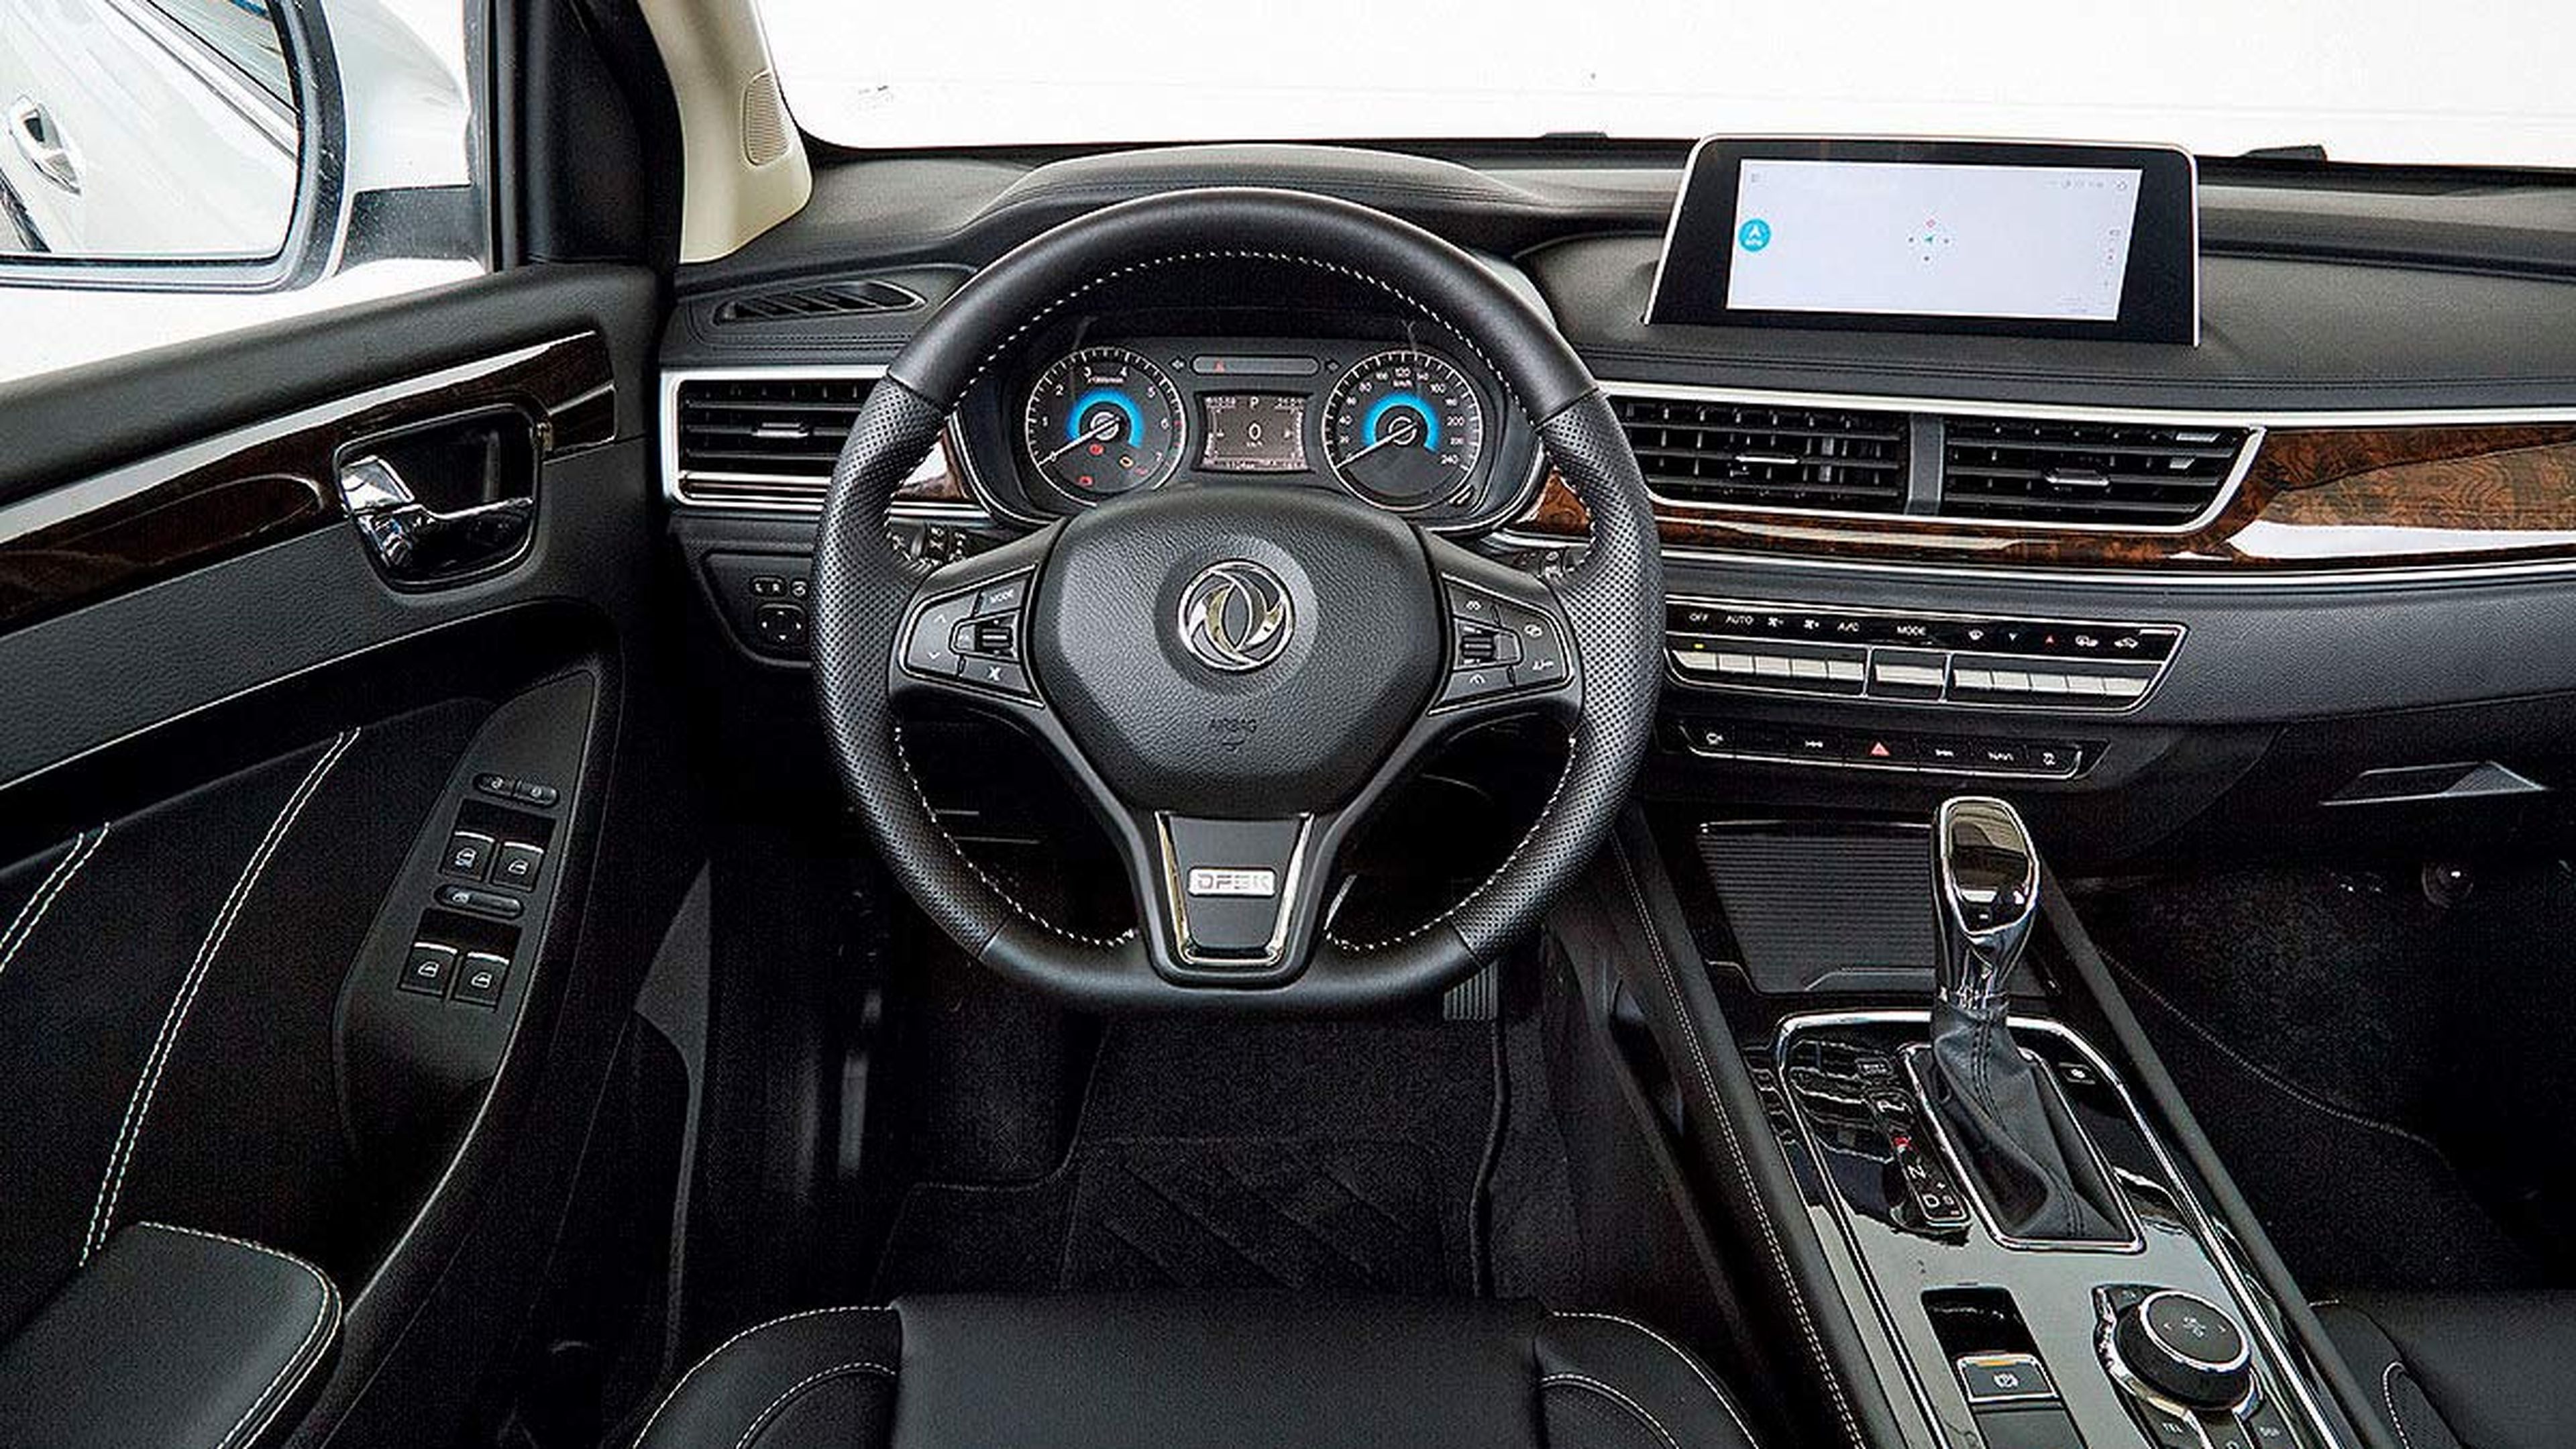 Interior un poco Frankenstein: Mercedes, BMW, Toyota...